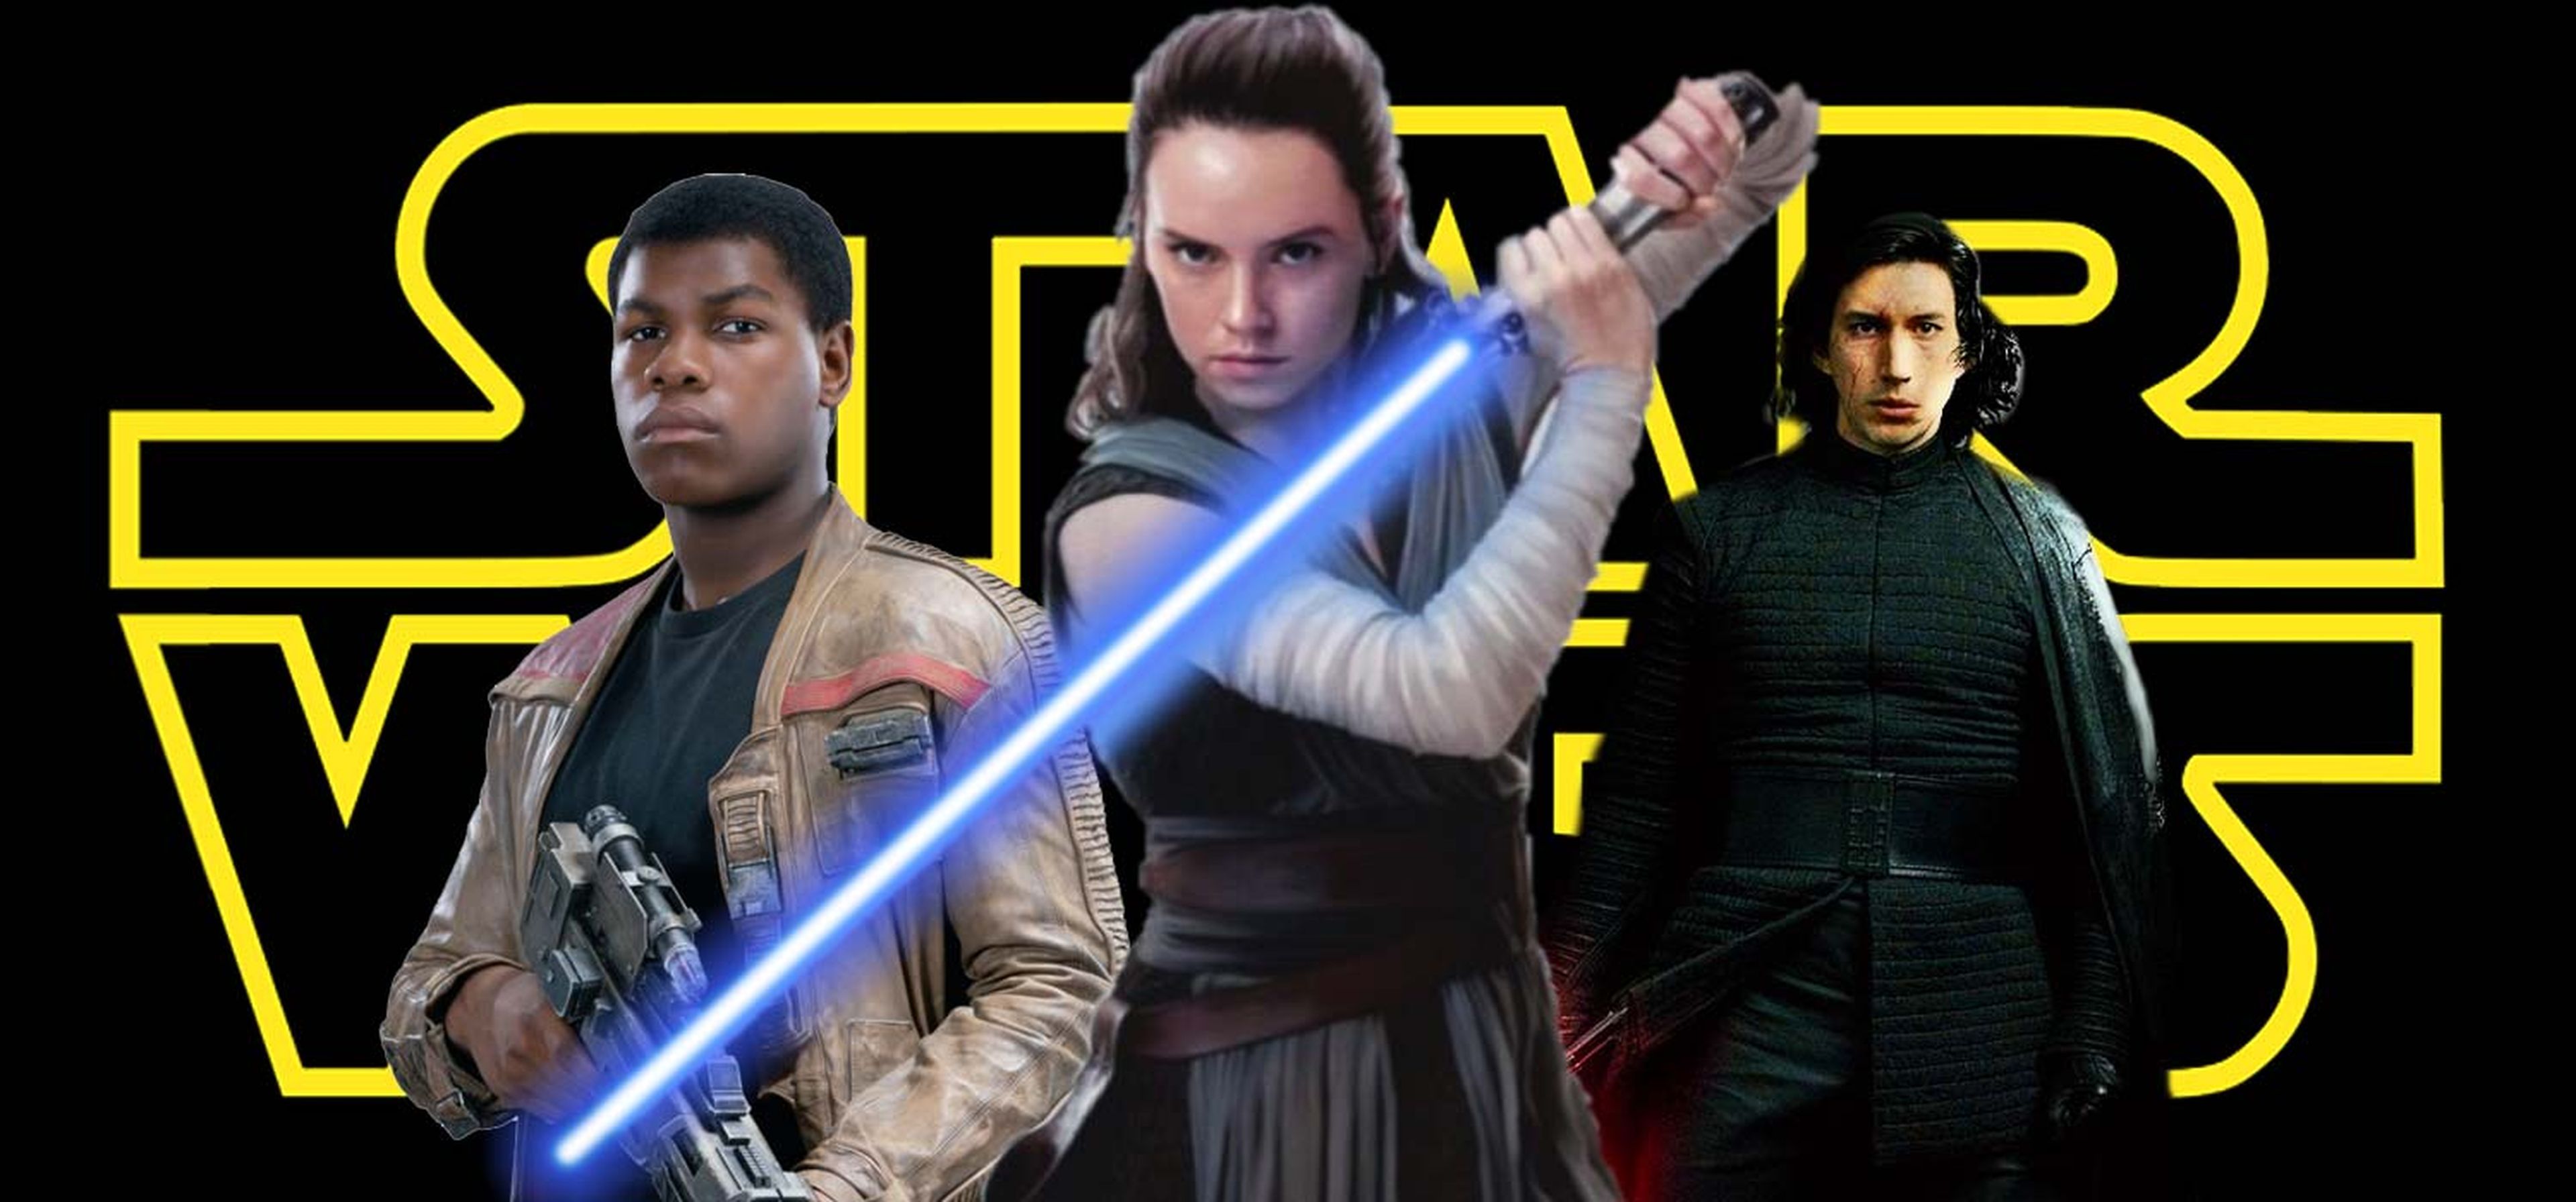 Todo lo que sabemos de Star Wars Episodio IX en 2018